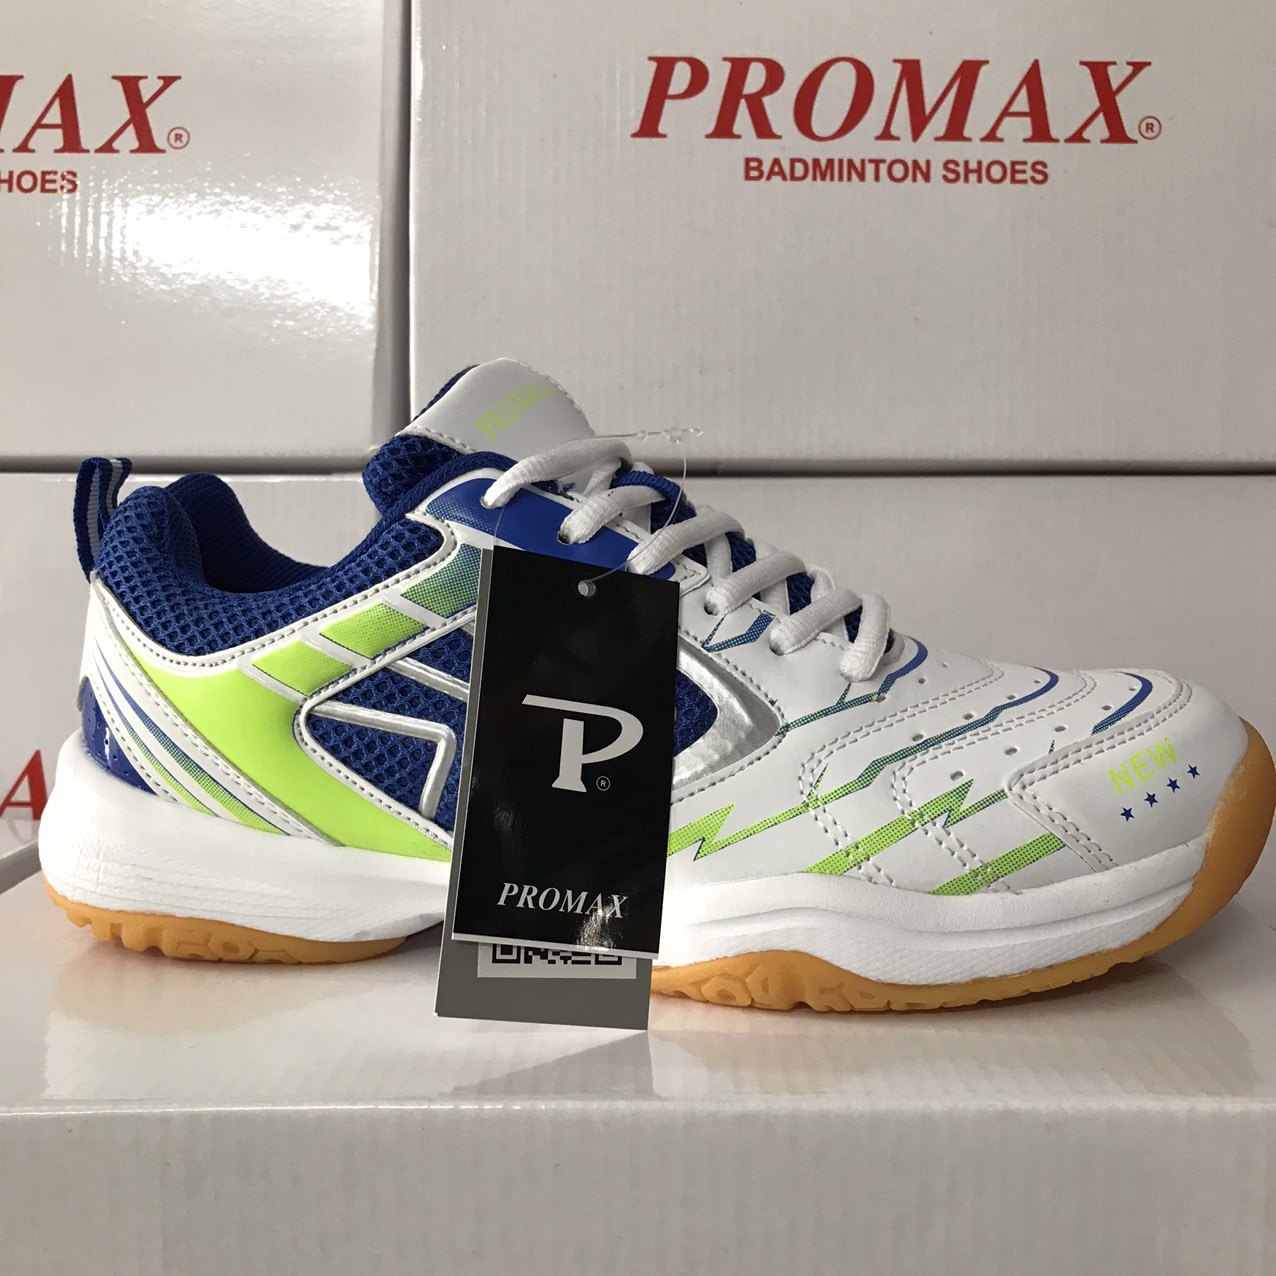 Giày Promax chuyên dụng chơi chơi cầu lông, bóng chuyền, bóng bàn cho nam, nữ Mã PR-20018 đế cao su non, da PU (4 màu đủ size từ 36-44)